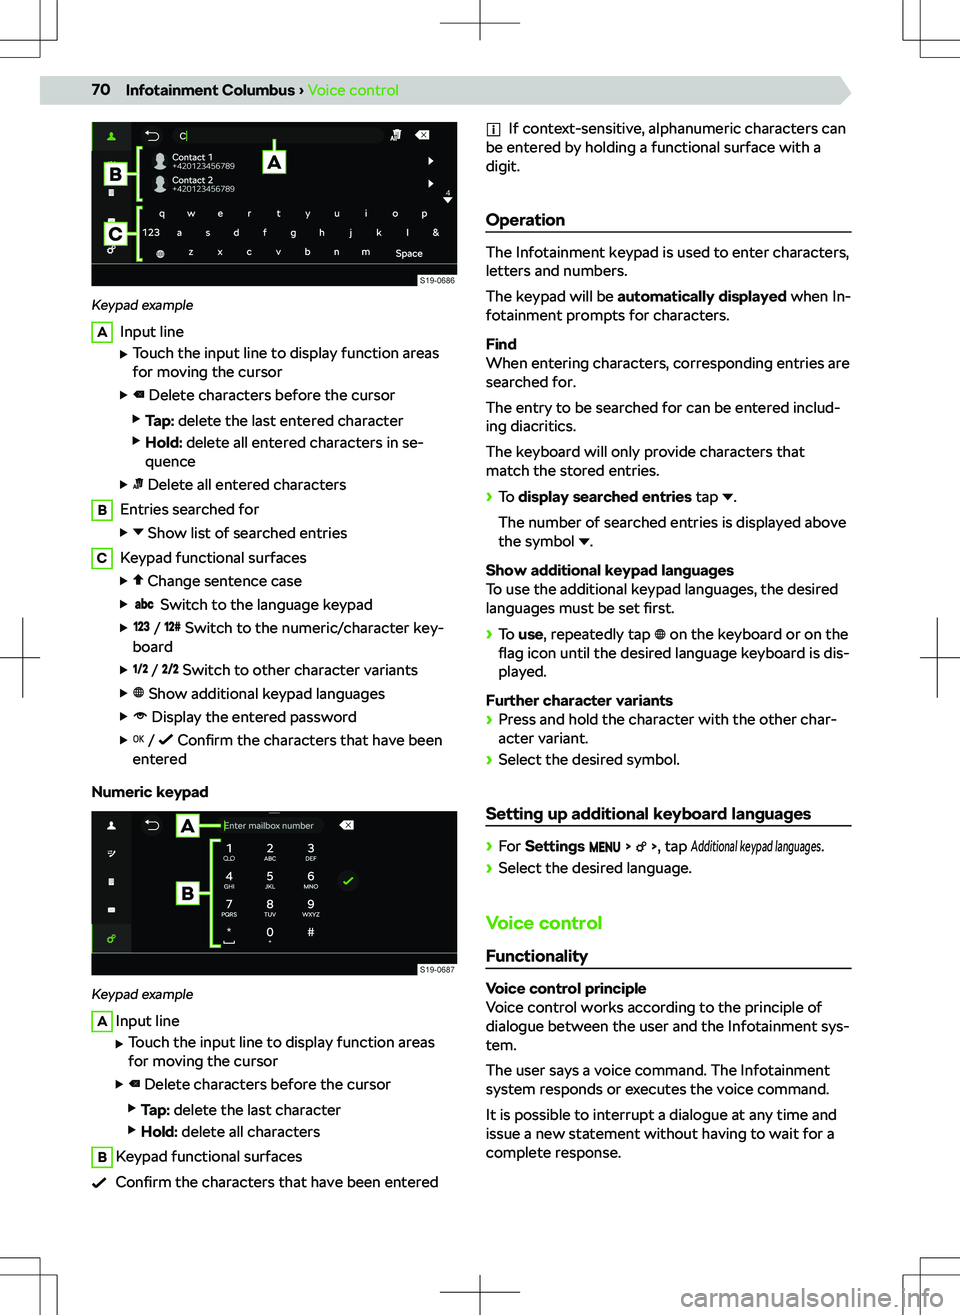 SKODA OCTAVIA 2020  Owner´s Manual Keypad example
AInput line